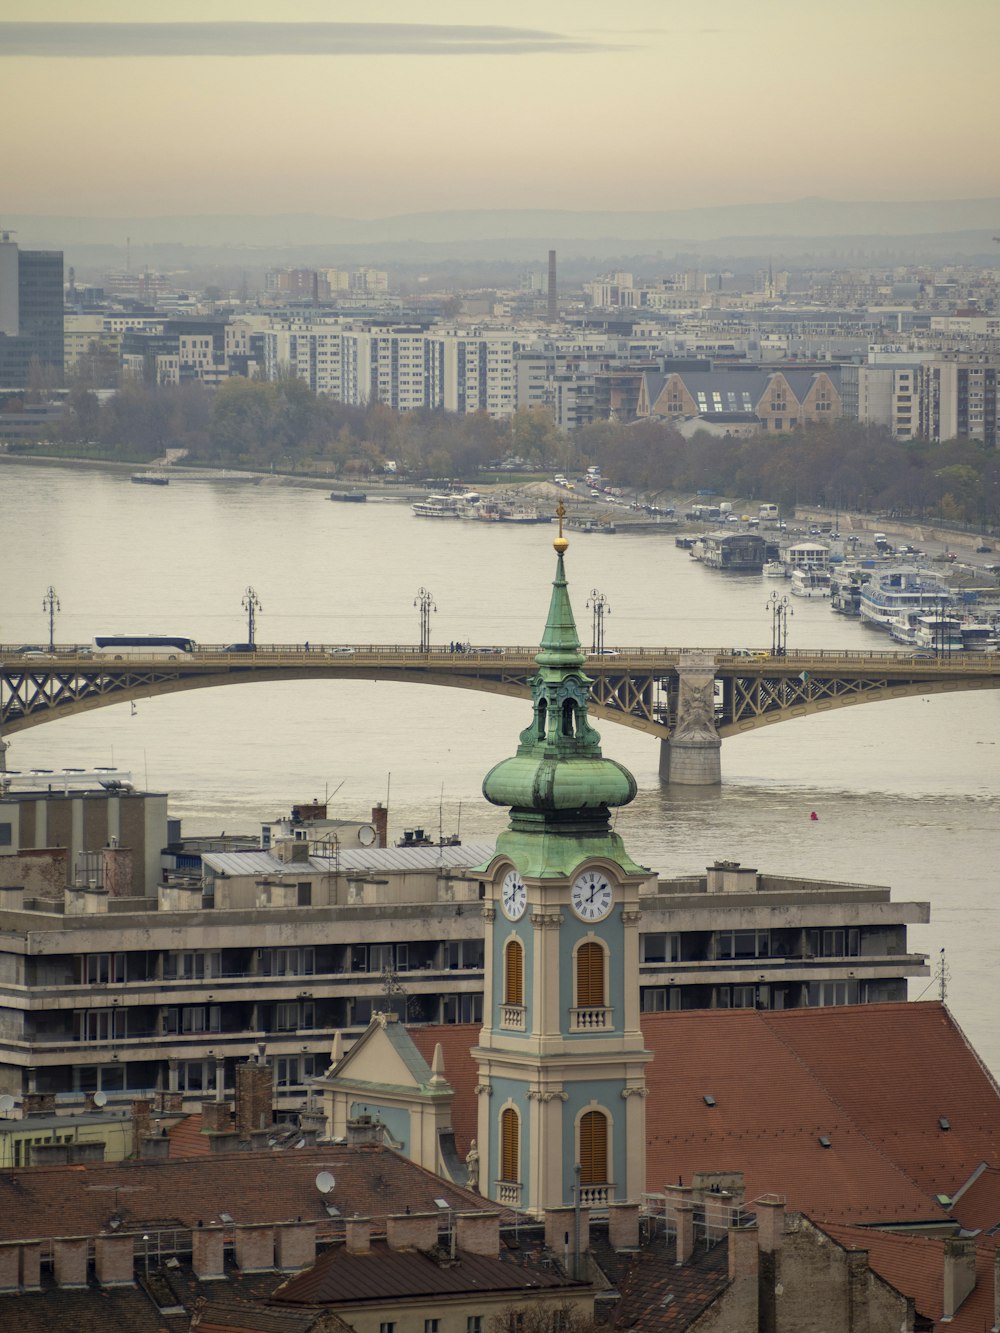 Una veduta di una città con un ponte e una torre dell'orologio